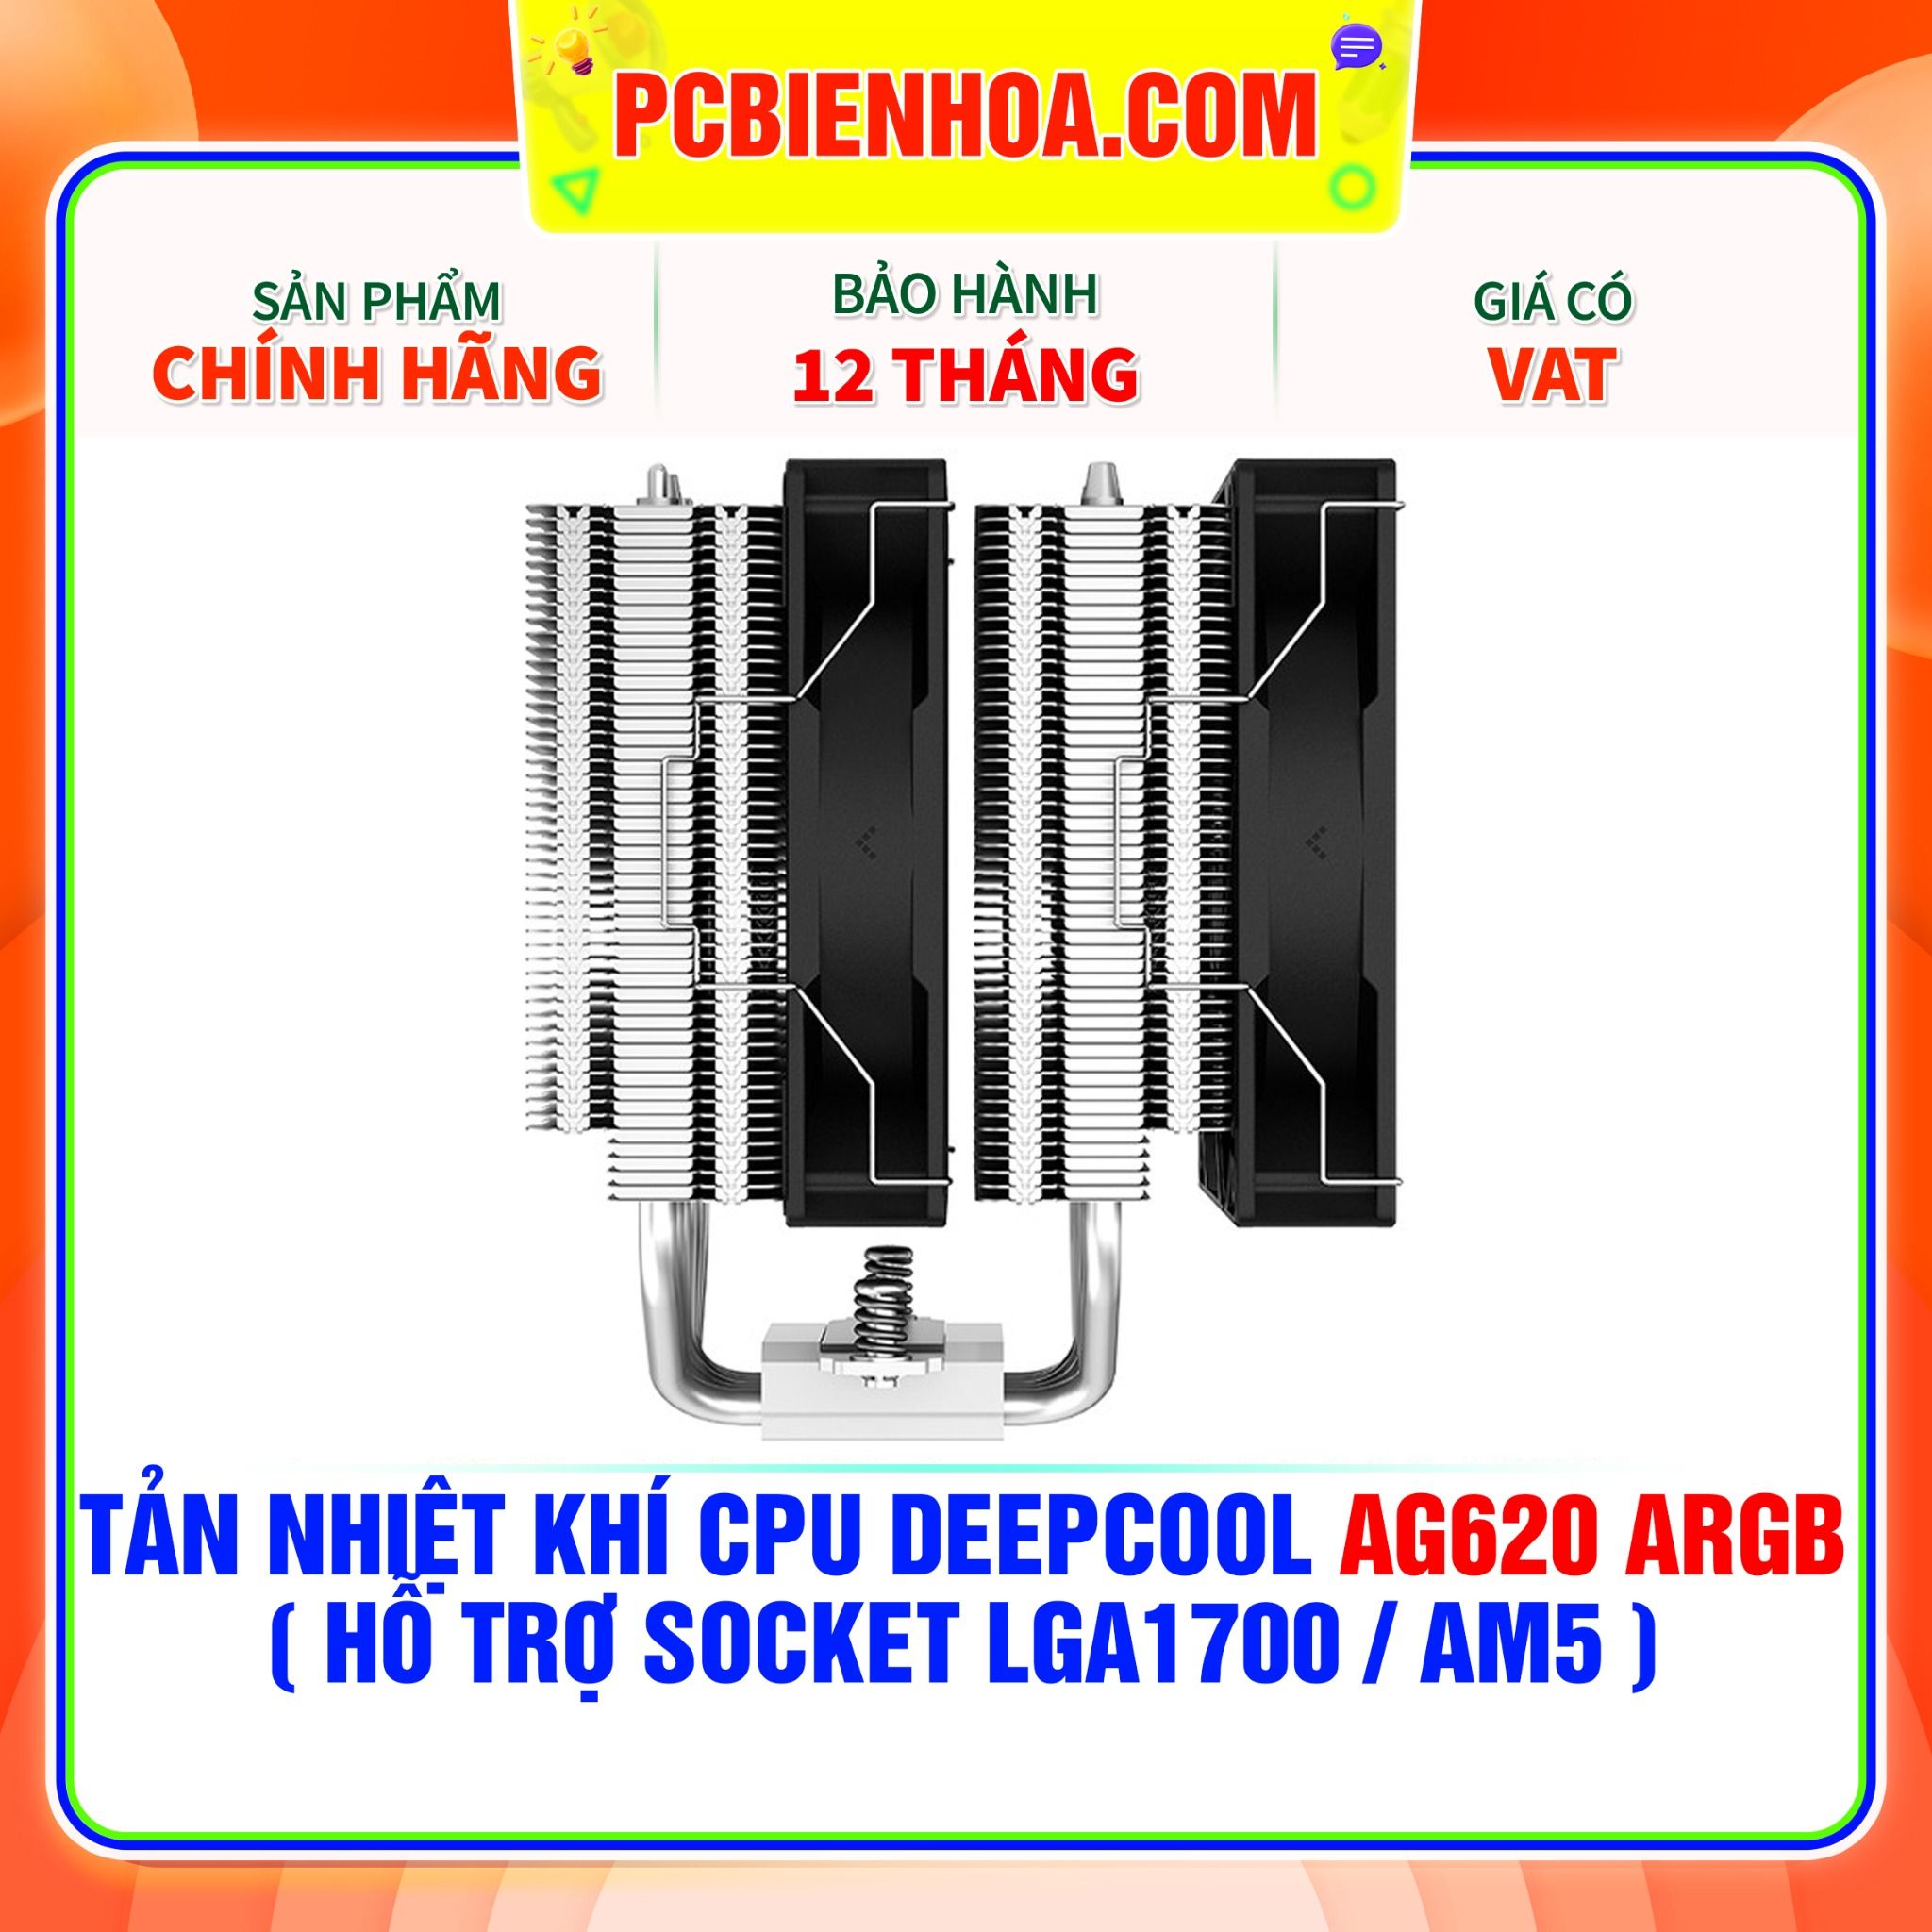  TẢN NHIỆT KHÍ CPU DEEPCOOL AG620 ARGB ( HỖ TRỢ SOCKET LGA1700 / AM5 ) 